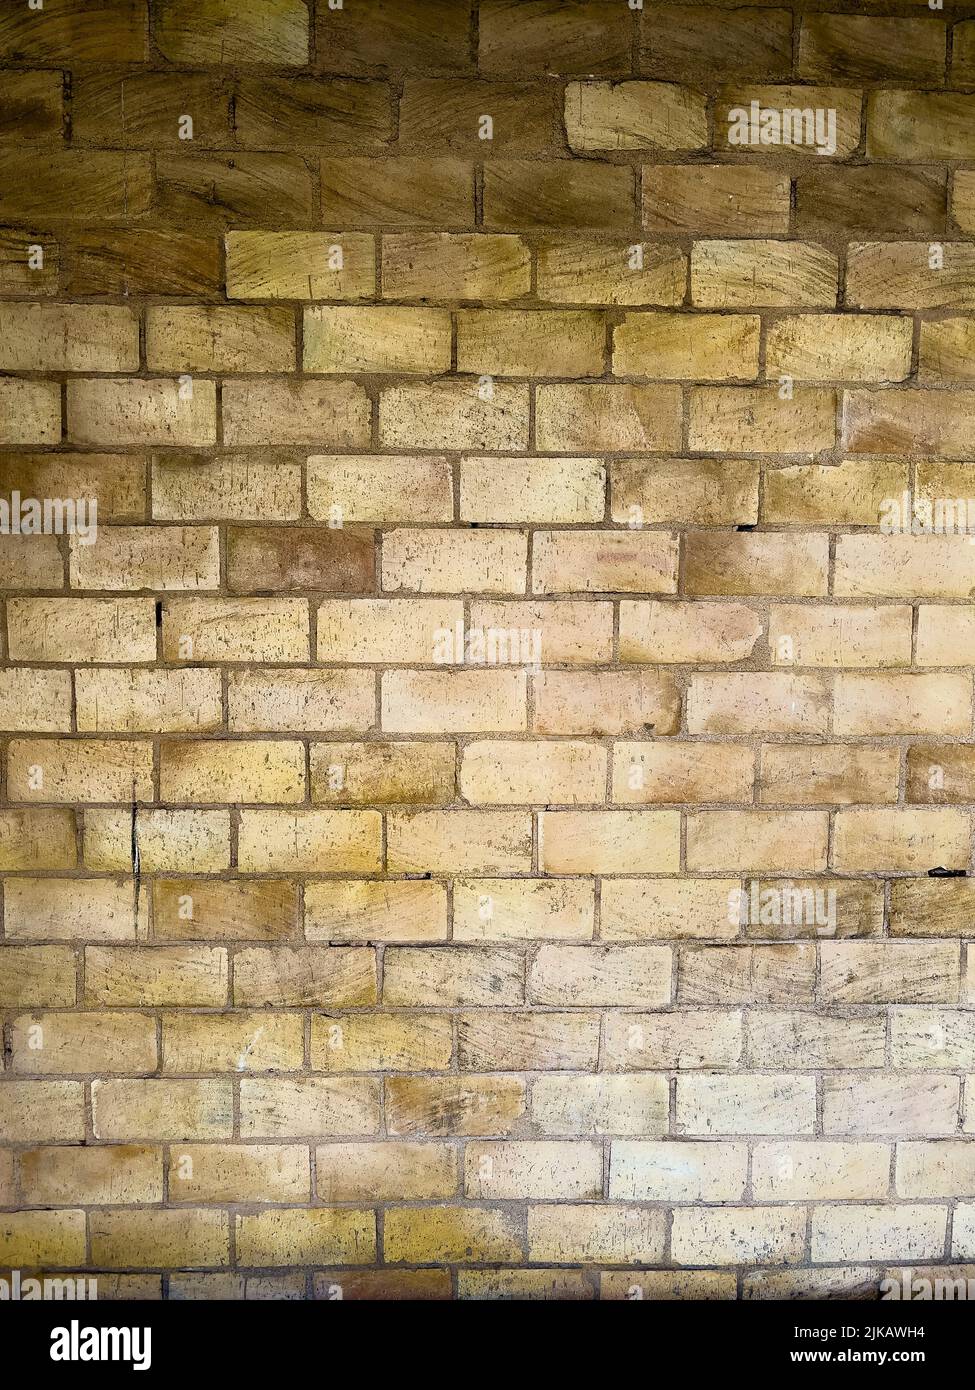 Marrón beige pared de ladrillo grunge fondo texturizado - foto de archivo Foto de stock